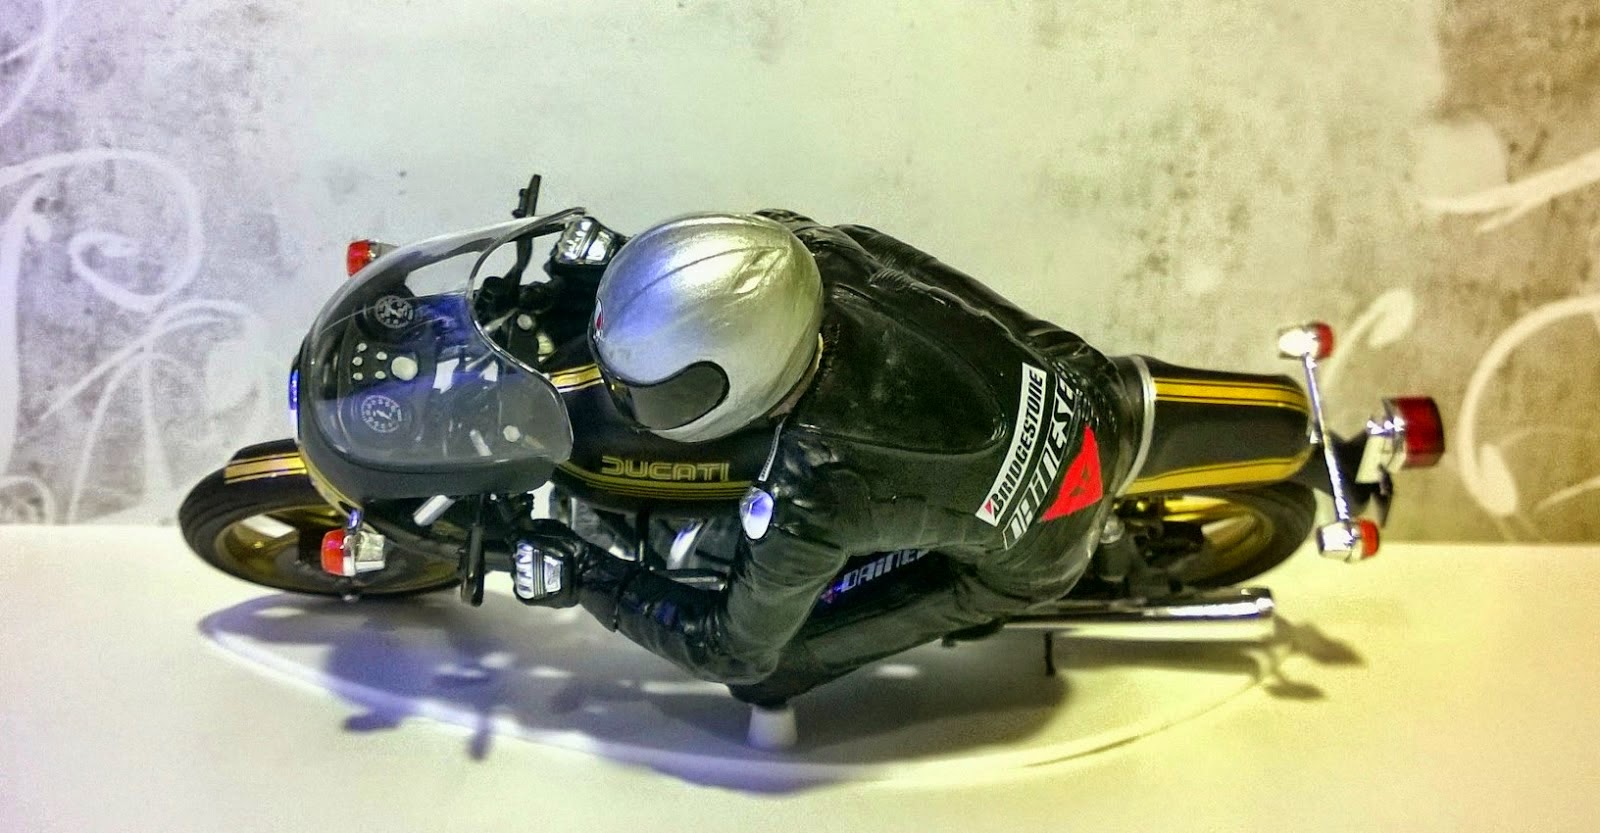 Rider#11&Ducati900ss